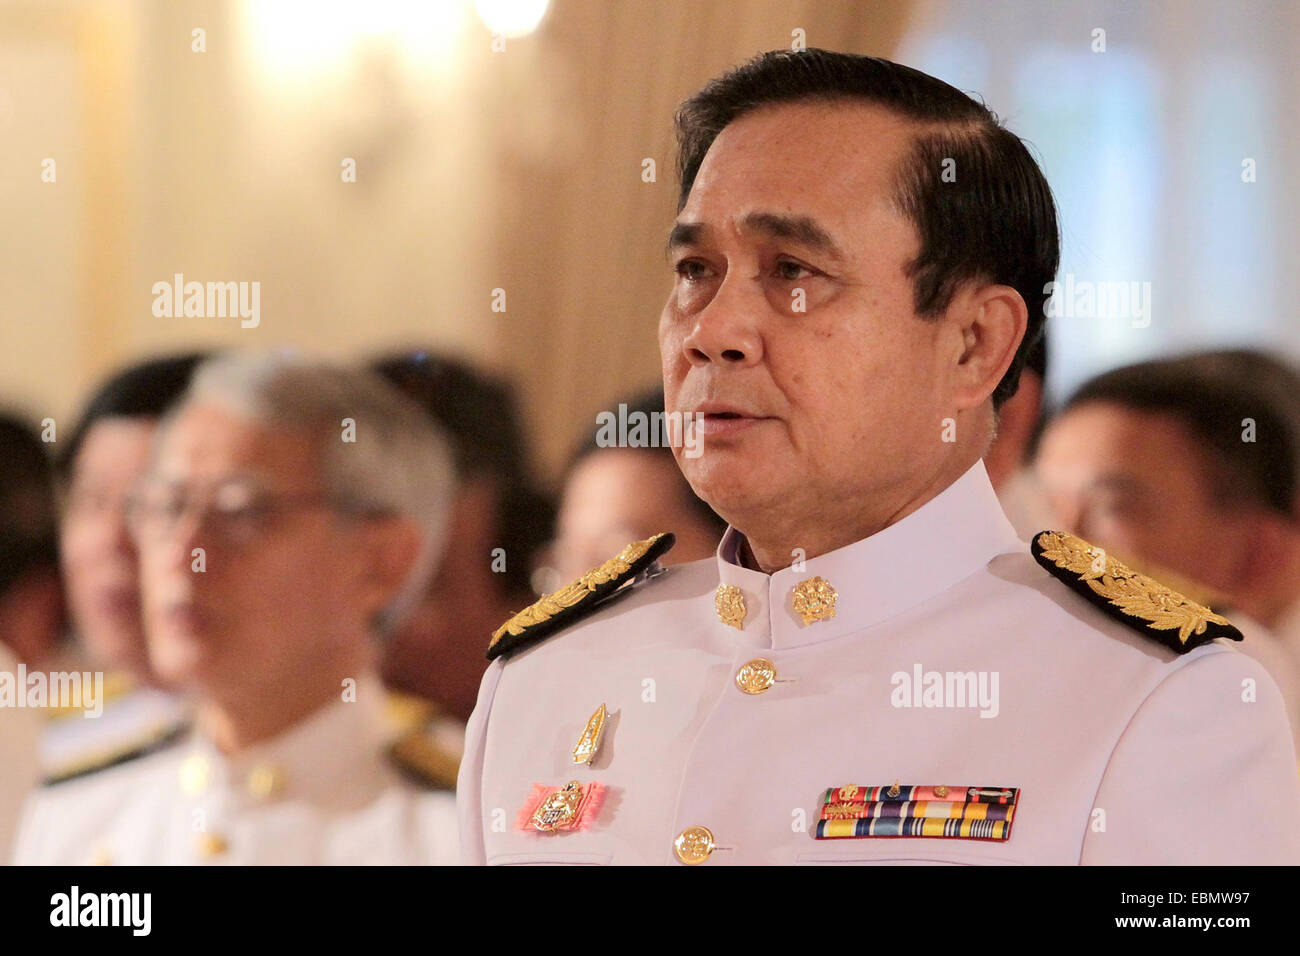 Bangkok, Tailandia. 3 dic, 2014. El Primer Ministro tailandés Gen. Prayuth Chan-ocha asiste a la ceremonia de juramento juramento de lealtad para ser buenos funcionarios gubernamentales como parte del Rey Bhumibol Adulyadej, la próxima 87ª fiesta de cumpleaños en la Casa de Gobierno en Bangkok, Tailandia, diciembre 3, 2014. El rey Bhumibol Adulyadej de Tailandia podría celebrar su 87º cumpleaños el 5 de diciembre. Crédito: Rachen Sageamsak/Xinhua/Alamy Live News Foto de stock